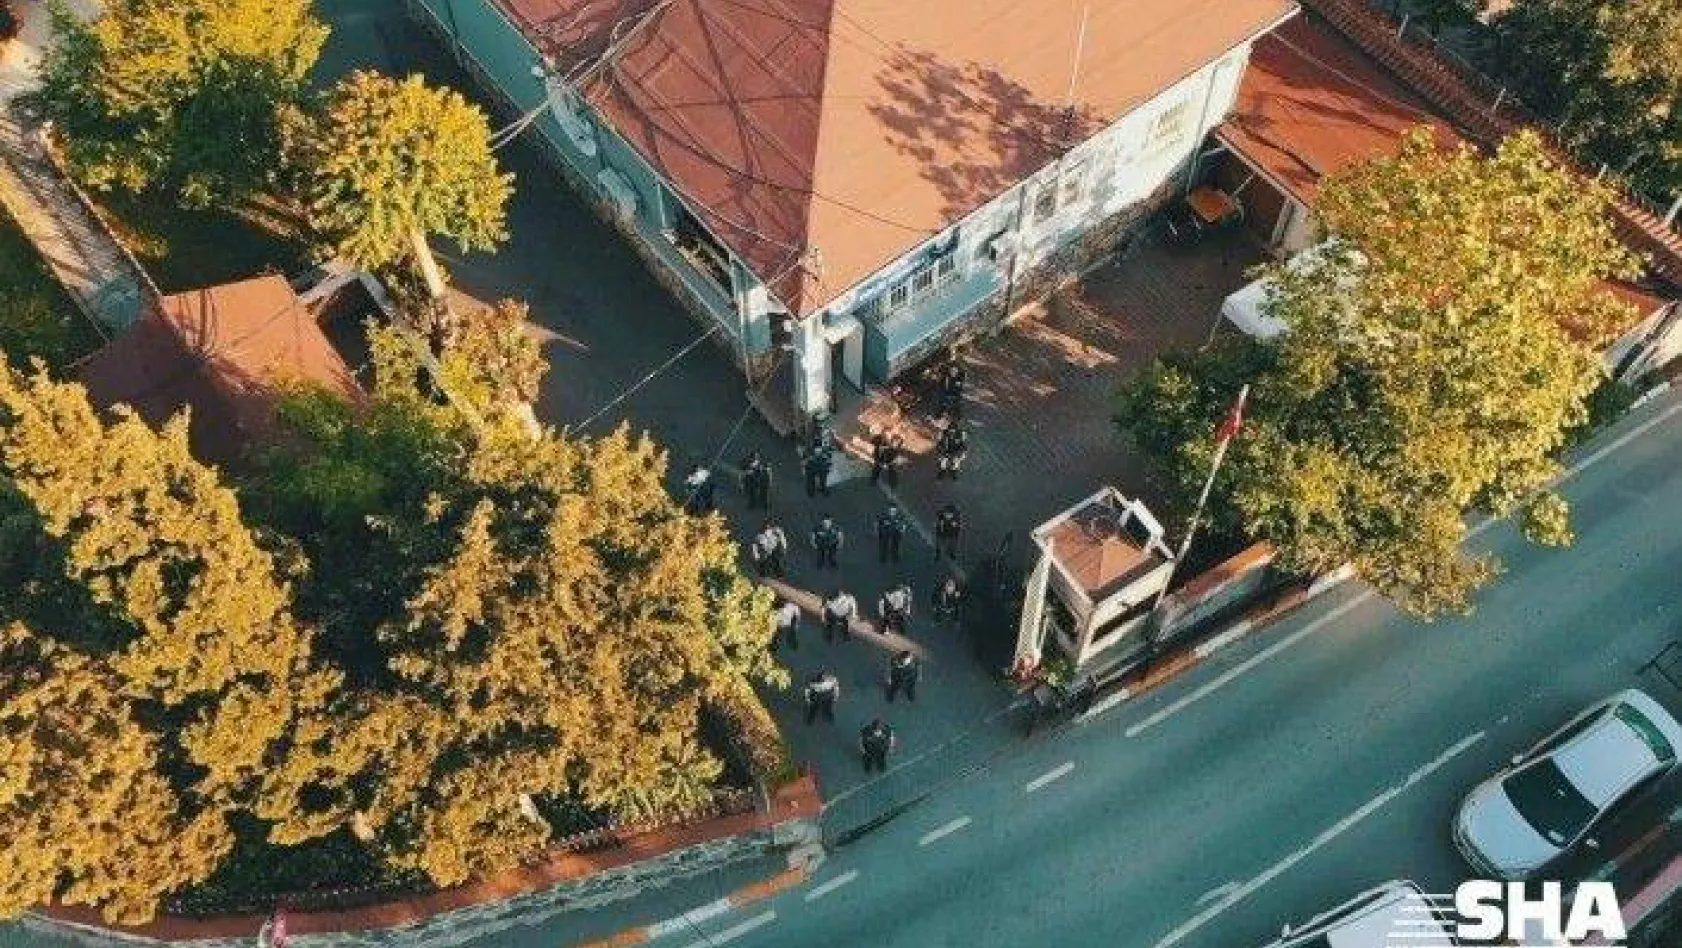 Beyoğlu polisinden 'drone'lu bayram klibi